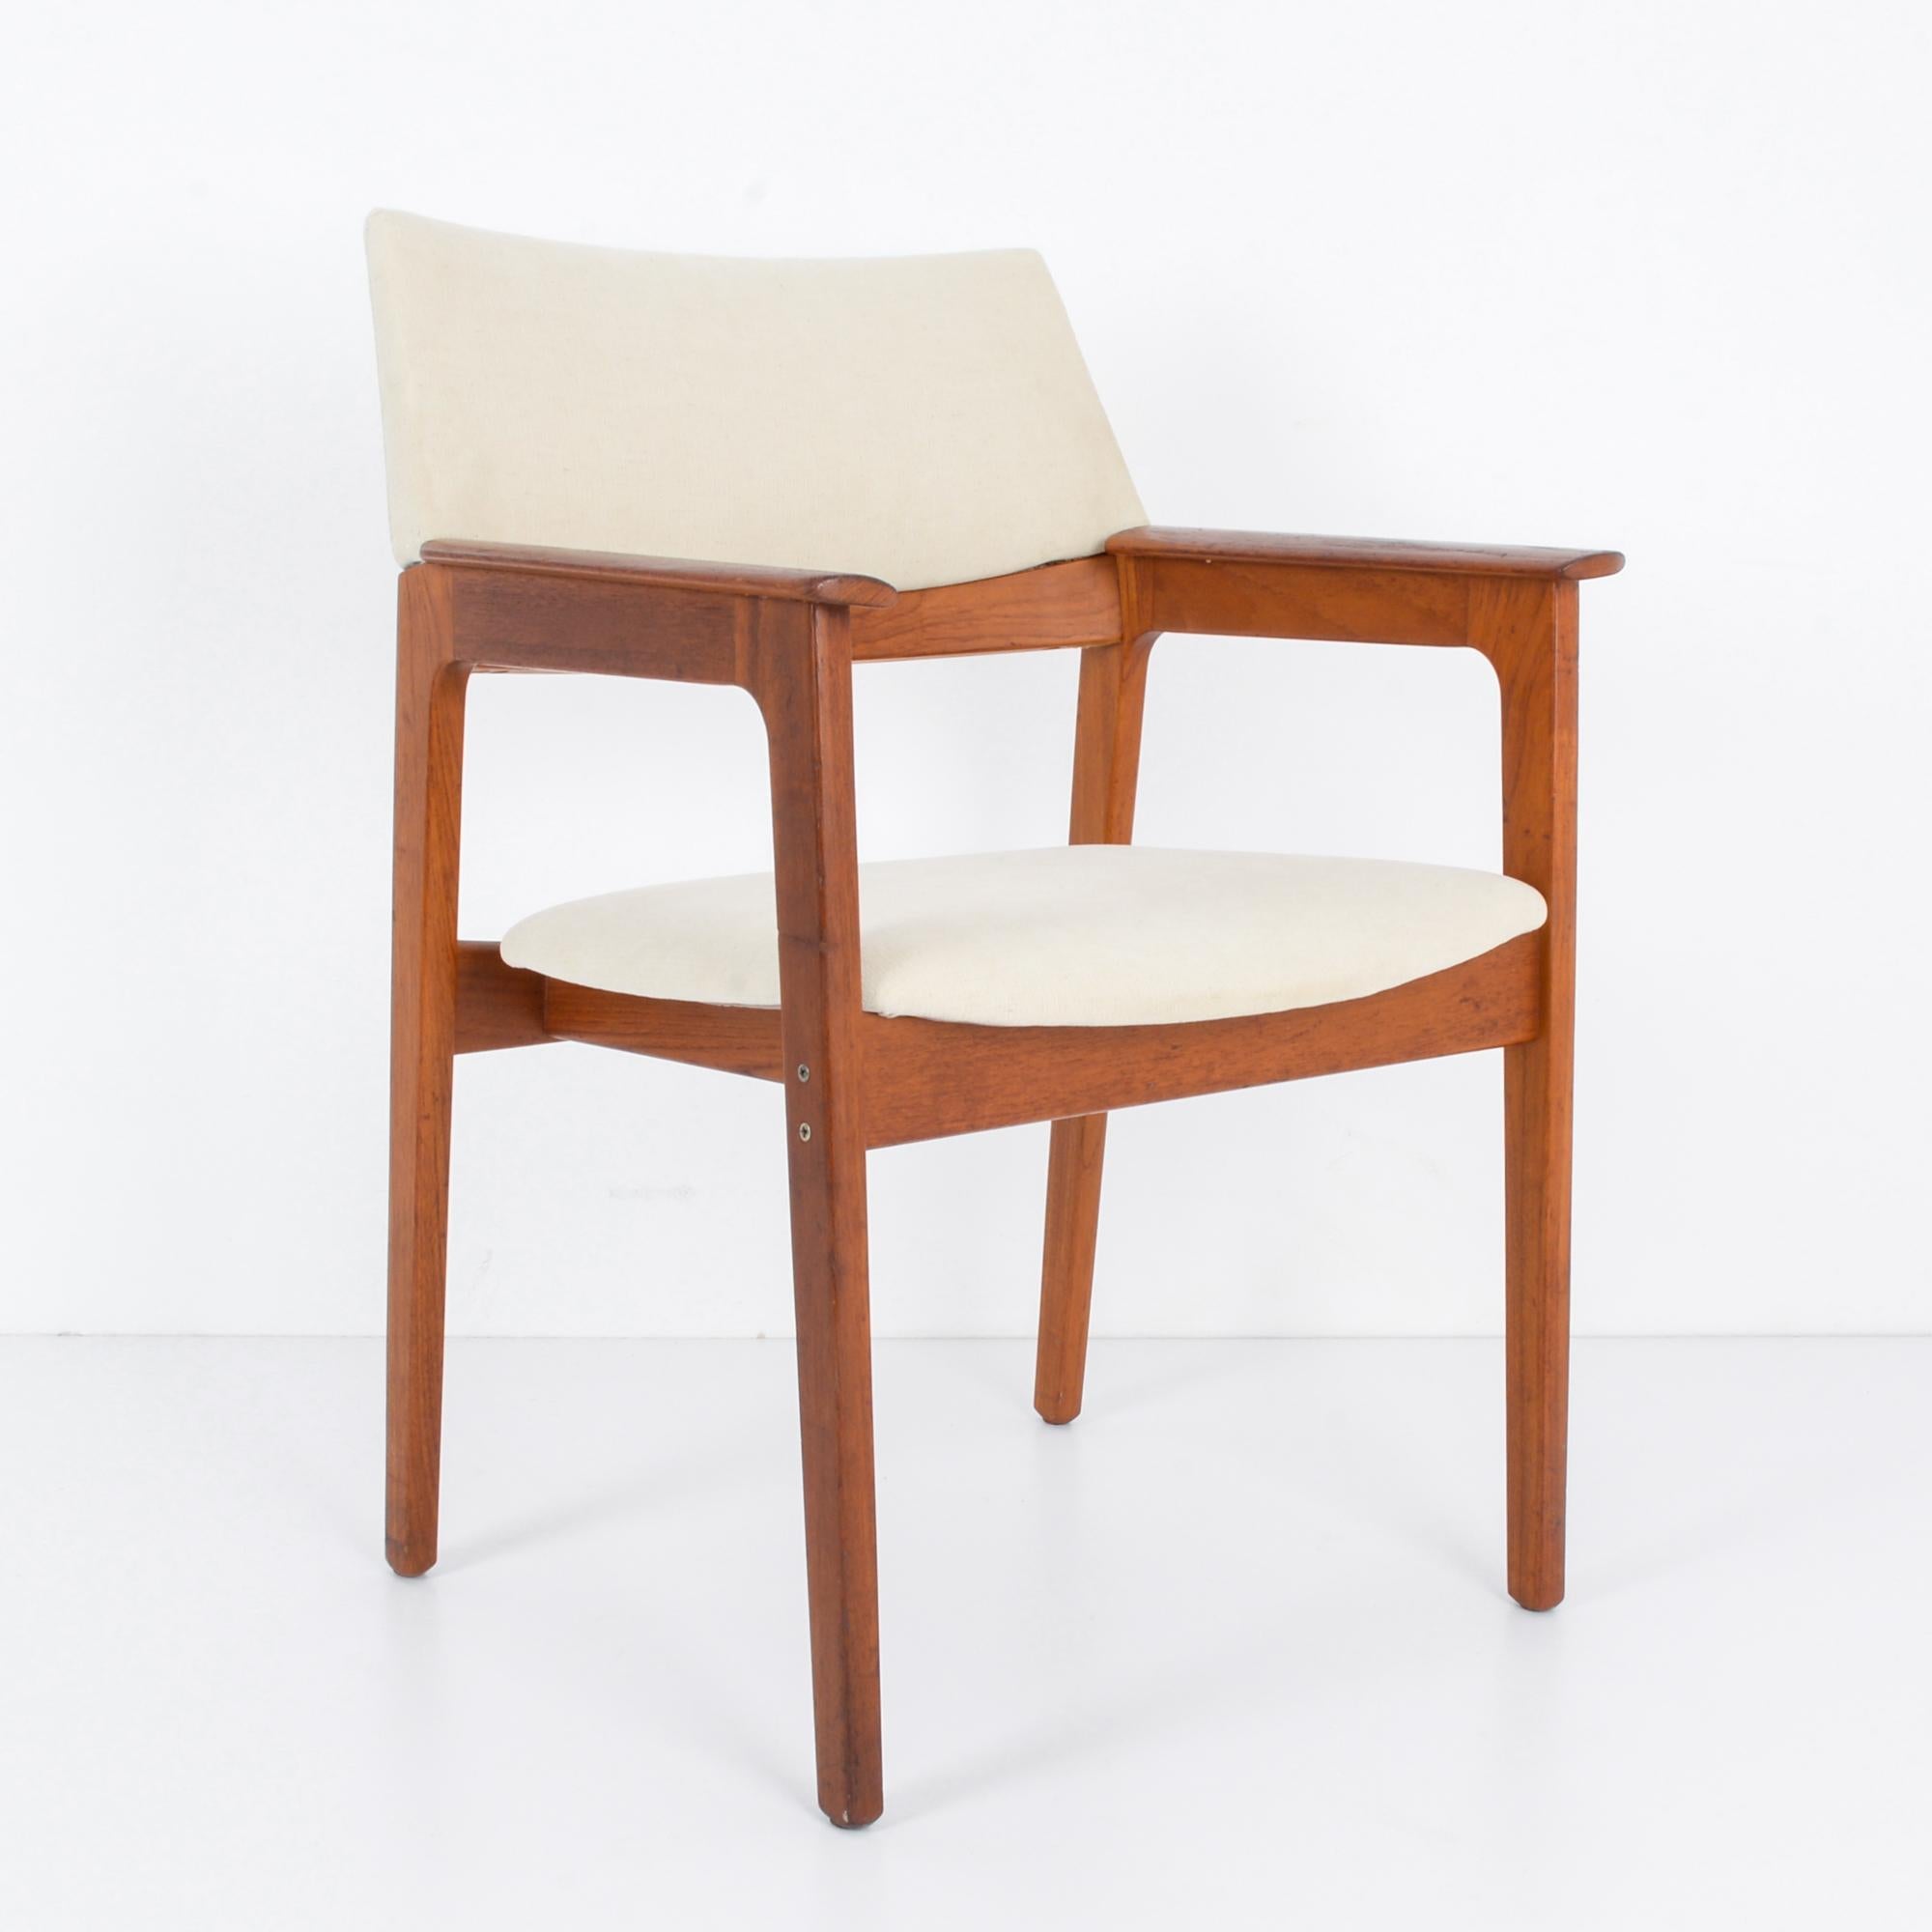 Dans le paysage du design innovant du Danemark des années 1960, ce fauteuil en bois avec une assise et un dossier rembourrés incarne la sophistication épurée et le confort ergonomique de l'époque. Réalisée avec une attention méticuleuse aux détails,